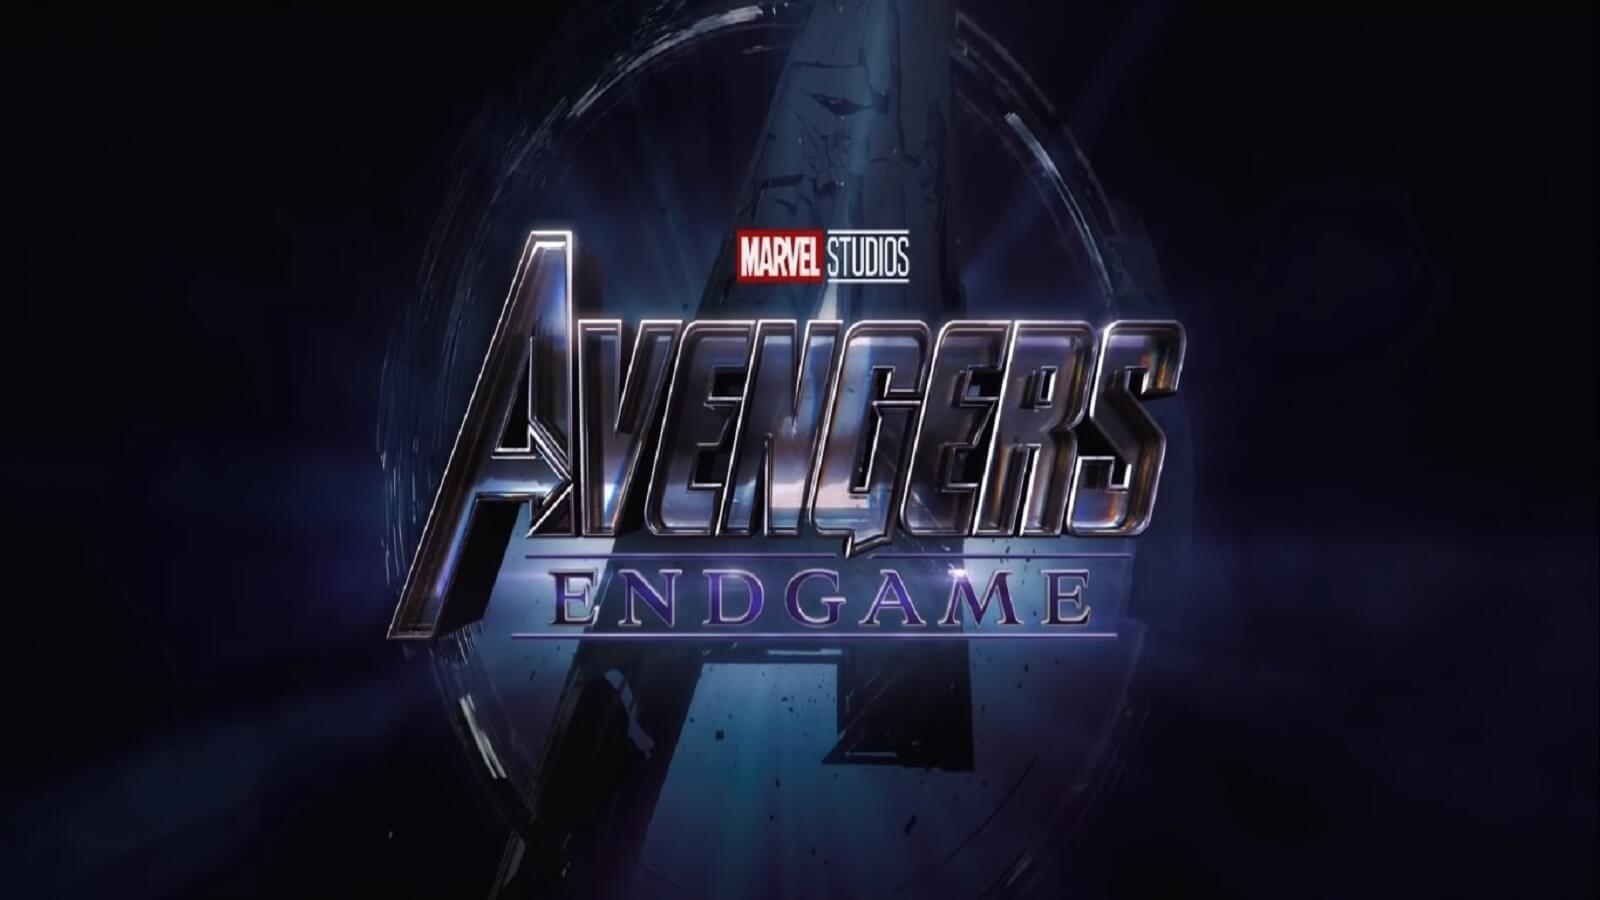 Endgame wallpaper HD Image 4K Marvel Studios Avengers